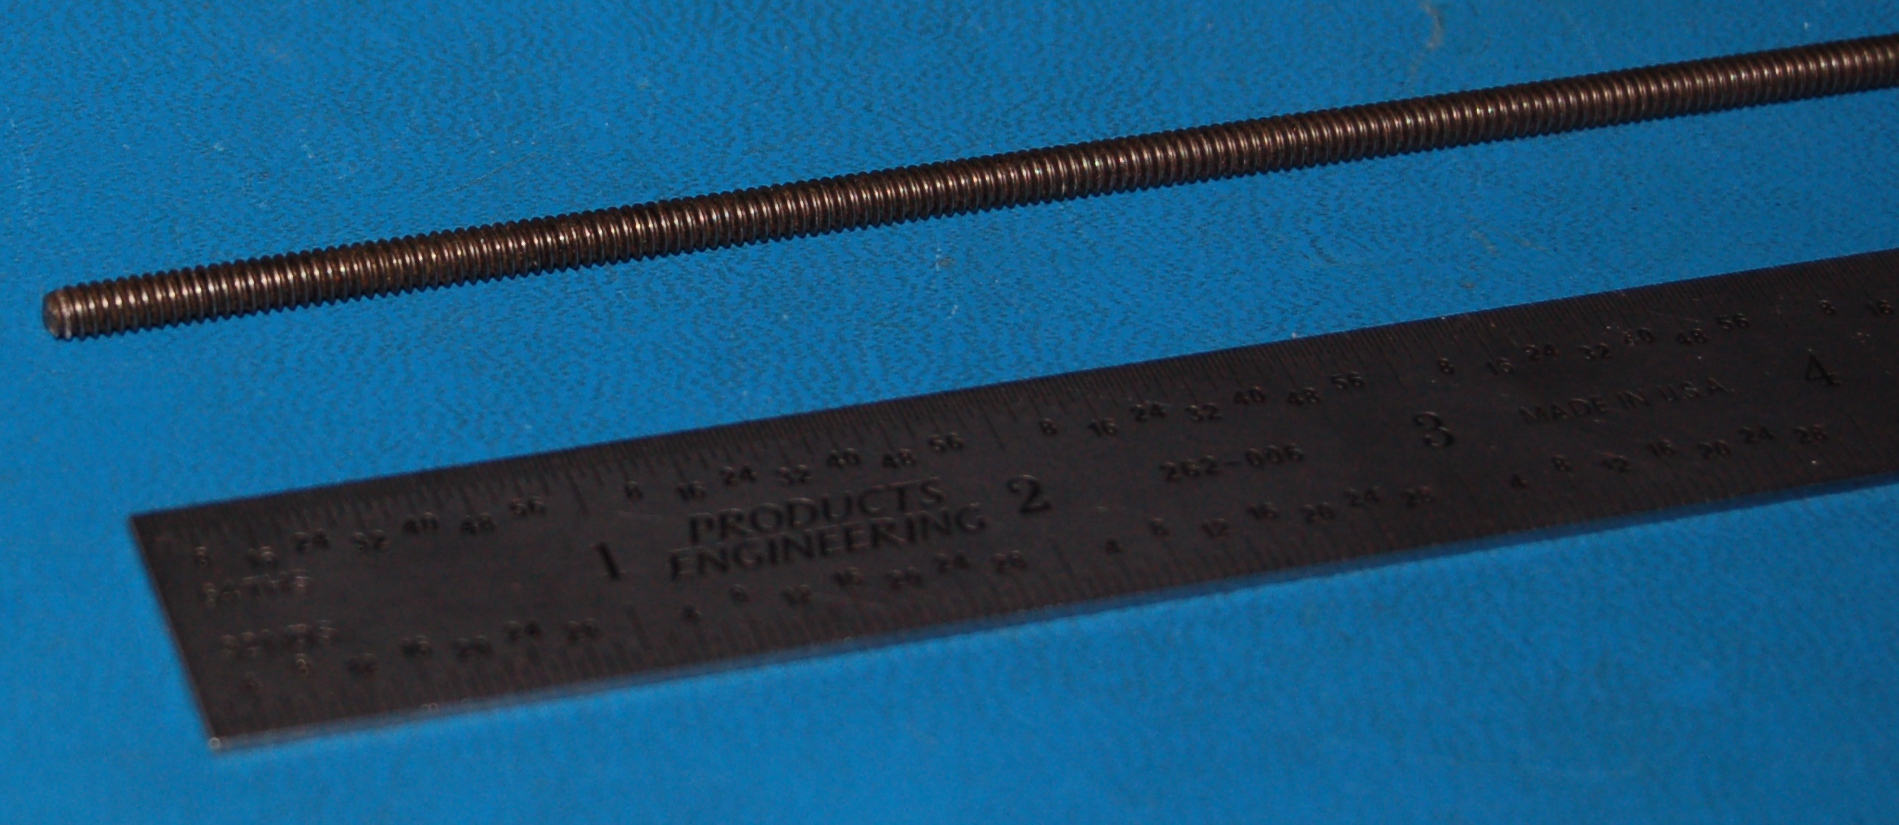 Titanium Grade 2 Threaded Rod, #6-32 x 1" (Cut-to-Length) - Click Image to Close